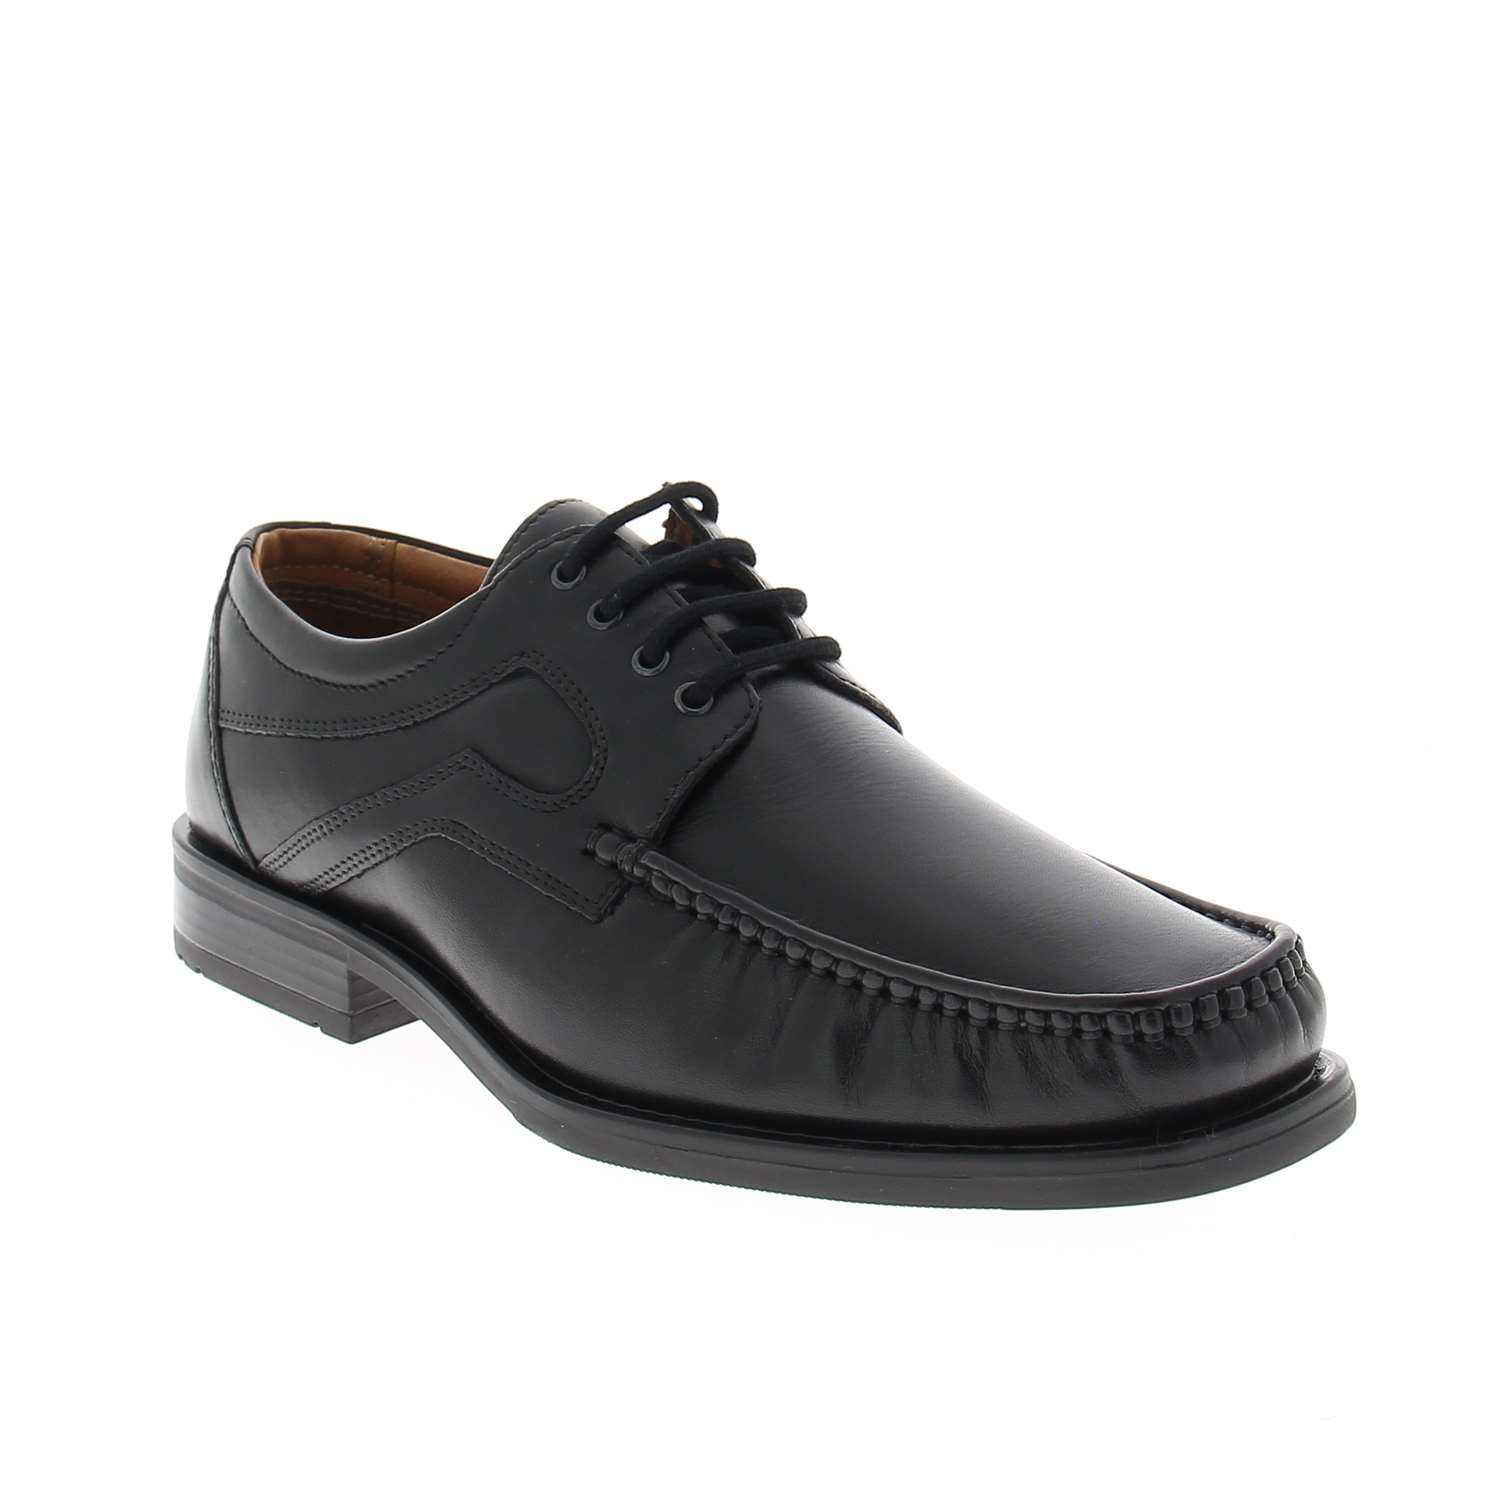 01 - APPLIK - XAPI - Chaussures à lacets - Cuir / textile